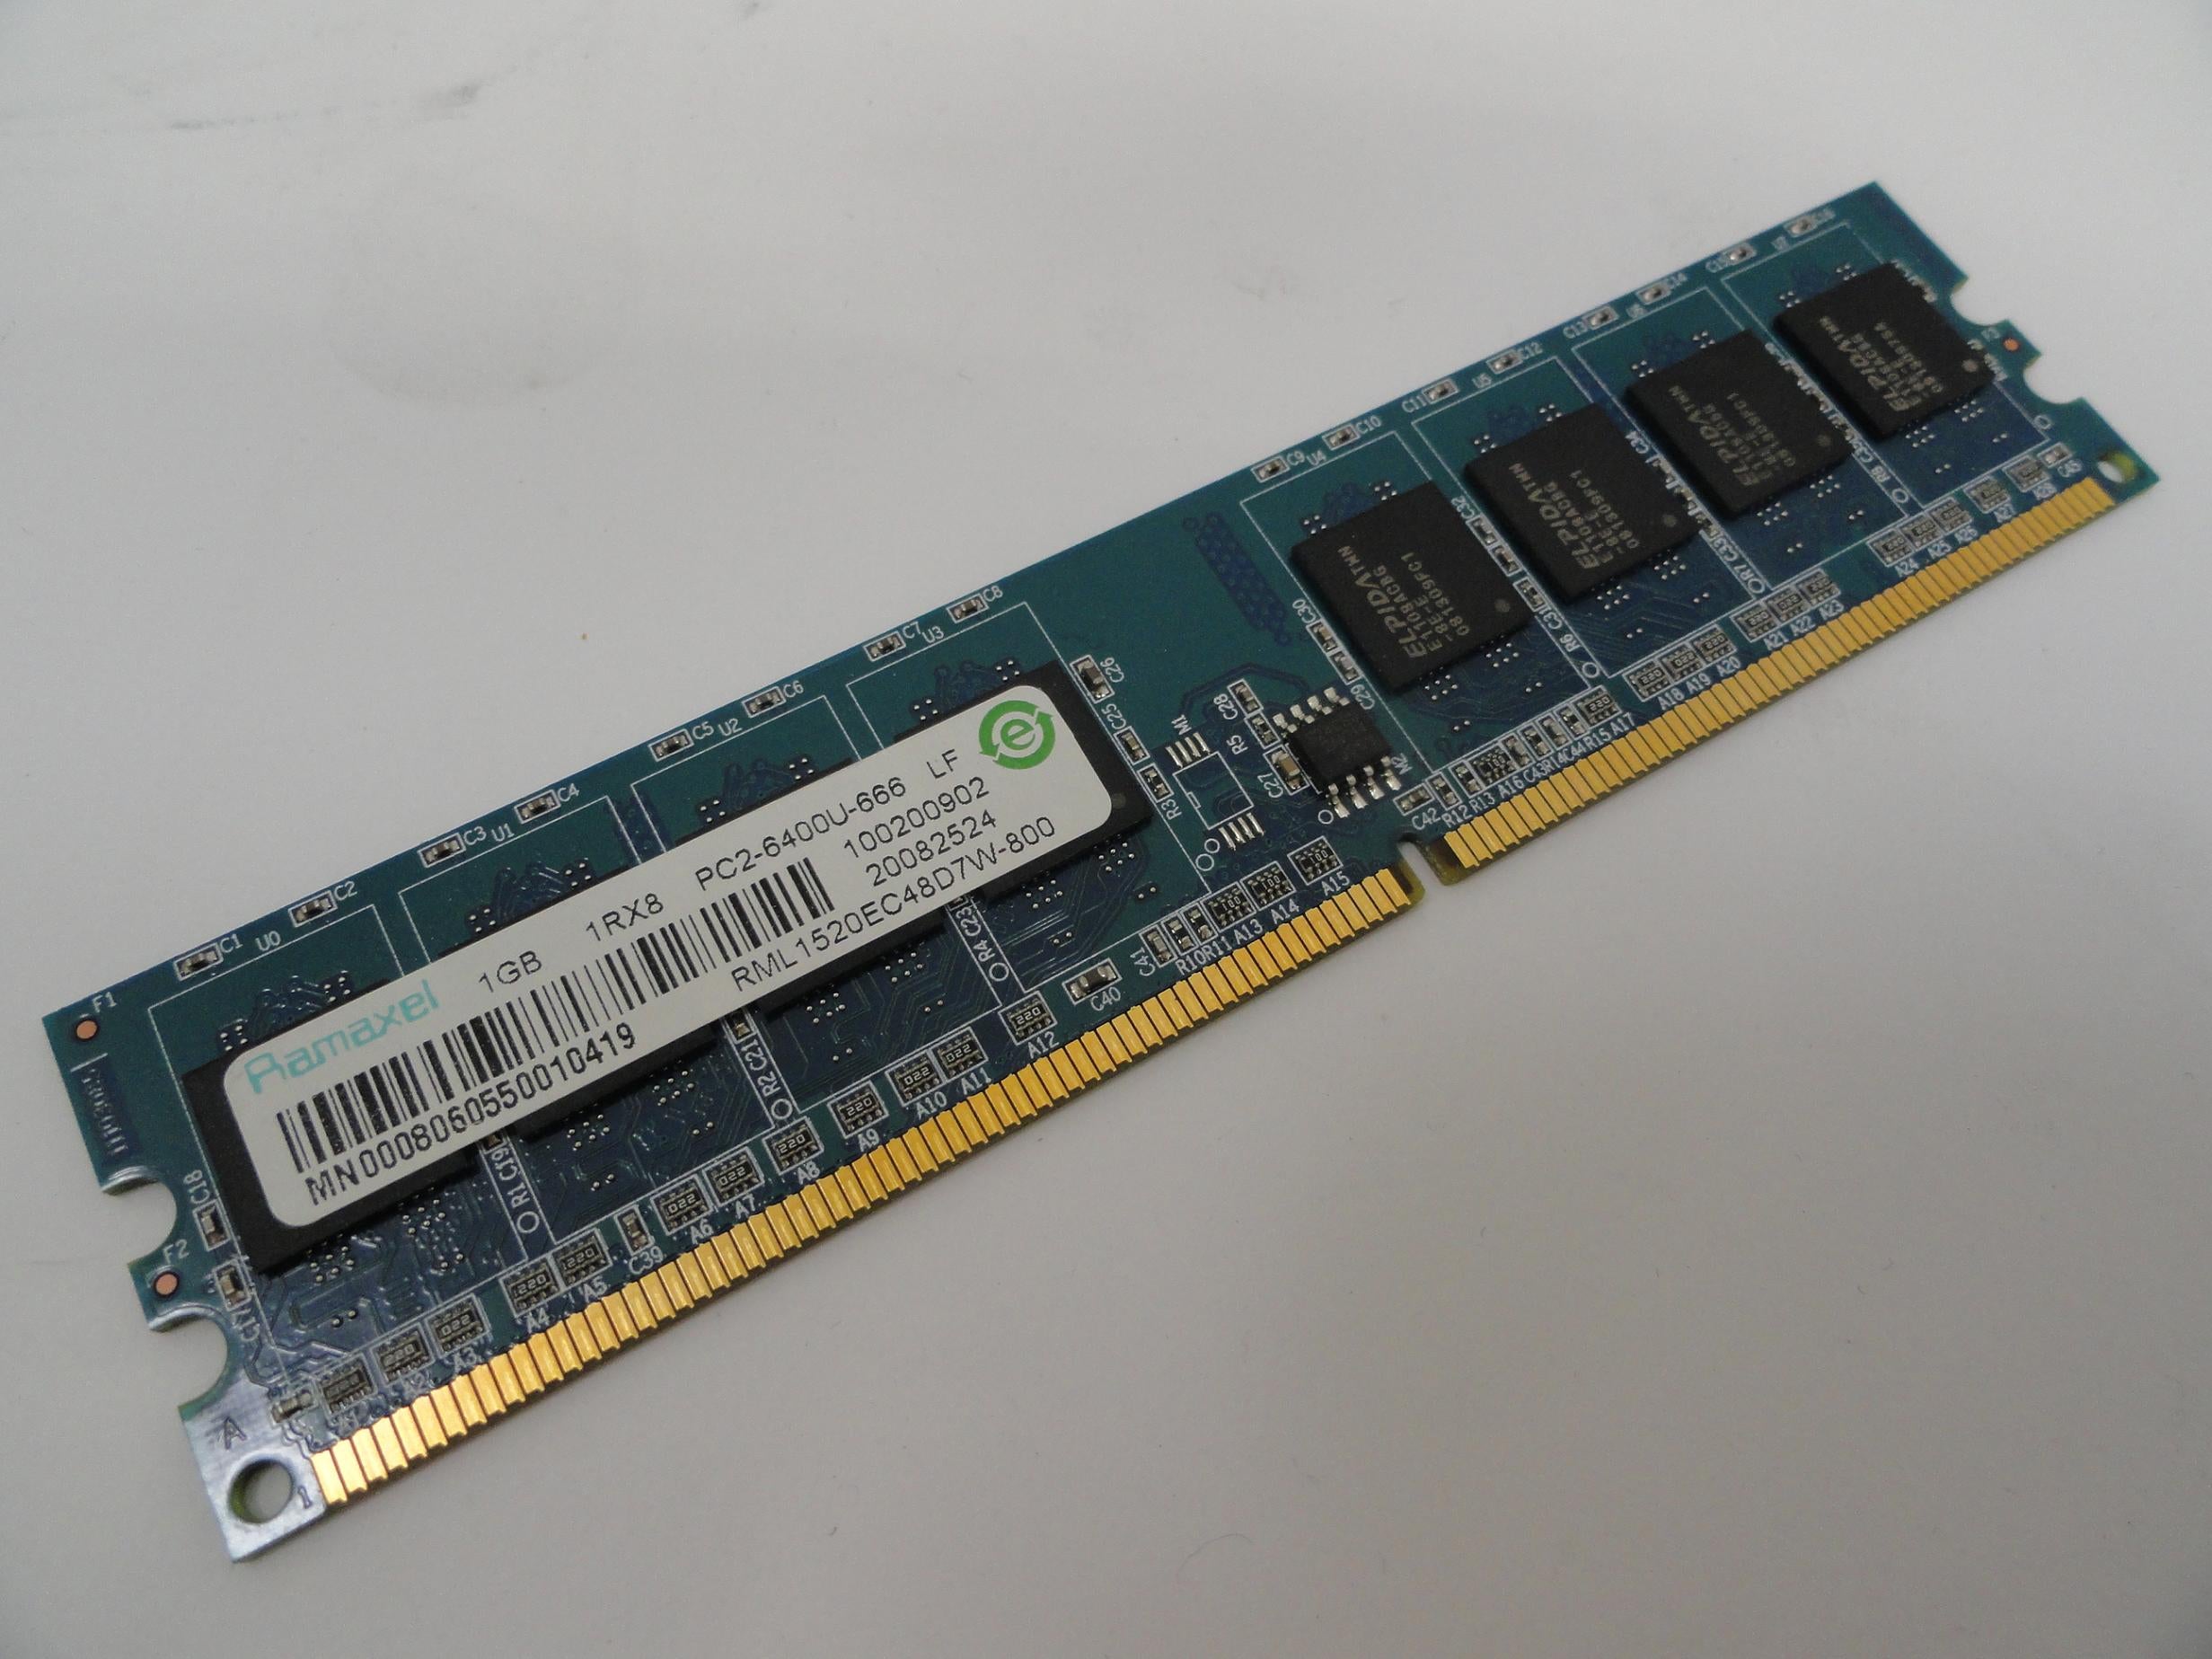 PR16344_RML1520EC48D7W-800_HP 1Gb PC2-6400 DDR2-800MHz DIMM RAM Module - Image3